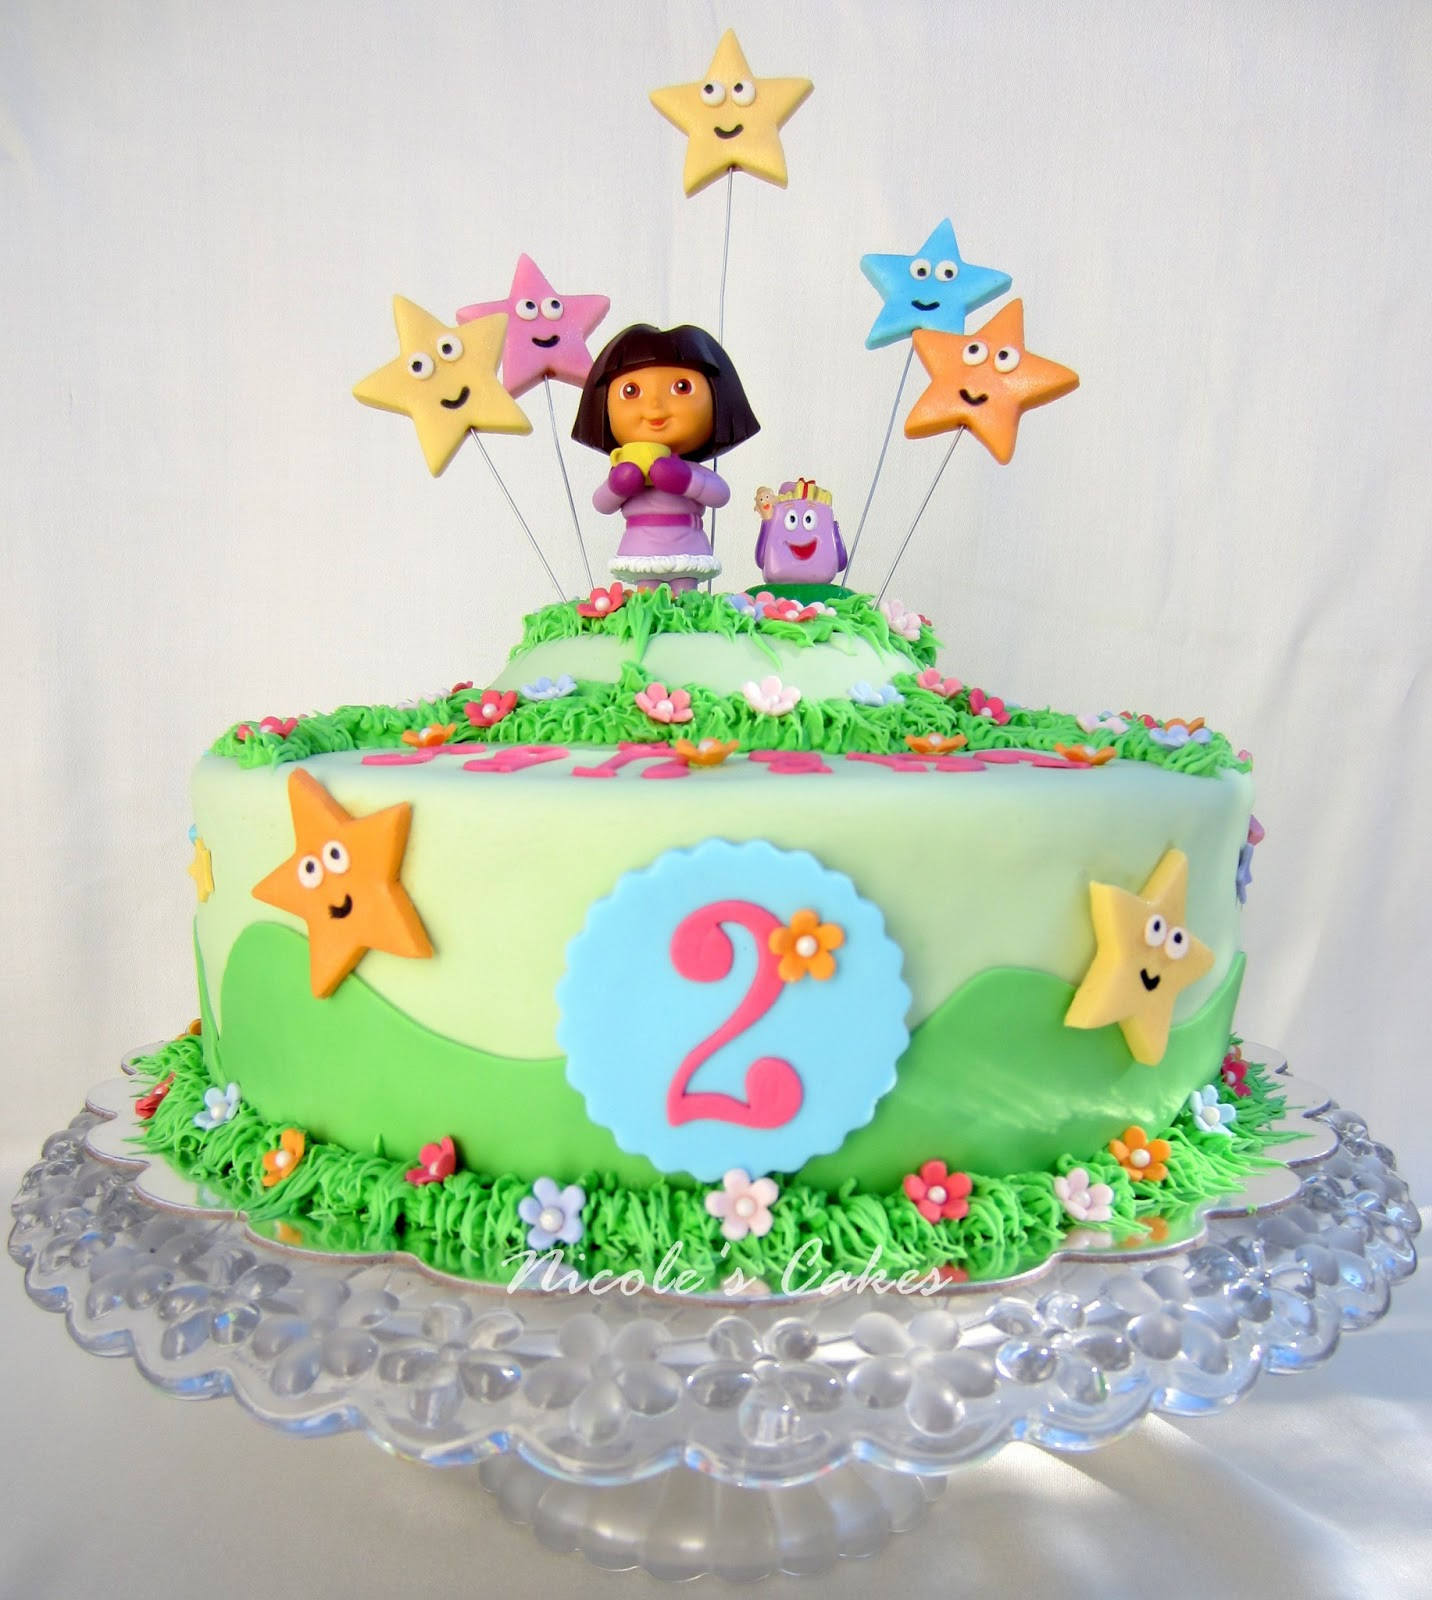 Dora The Explorer Birthday Cakes
 Confections Cakes & Creations Dora The Explorer